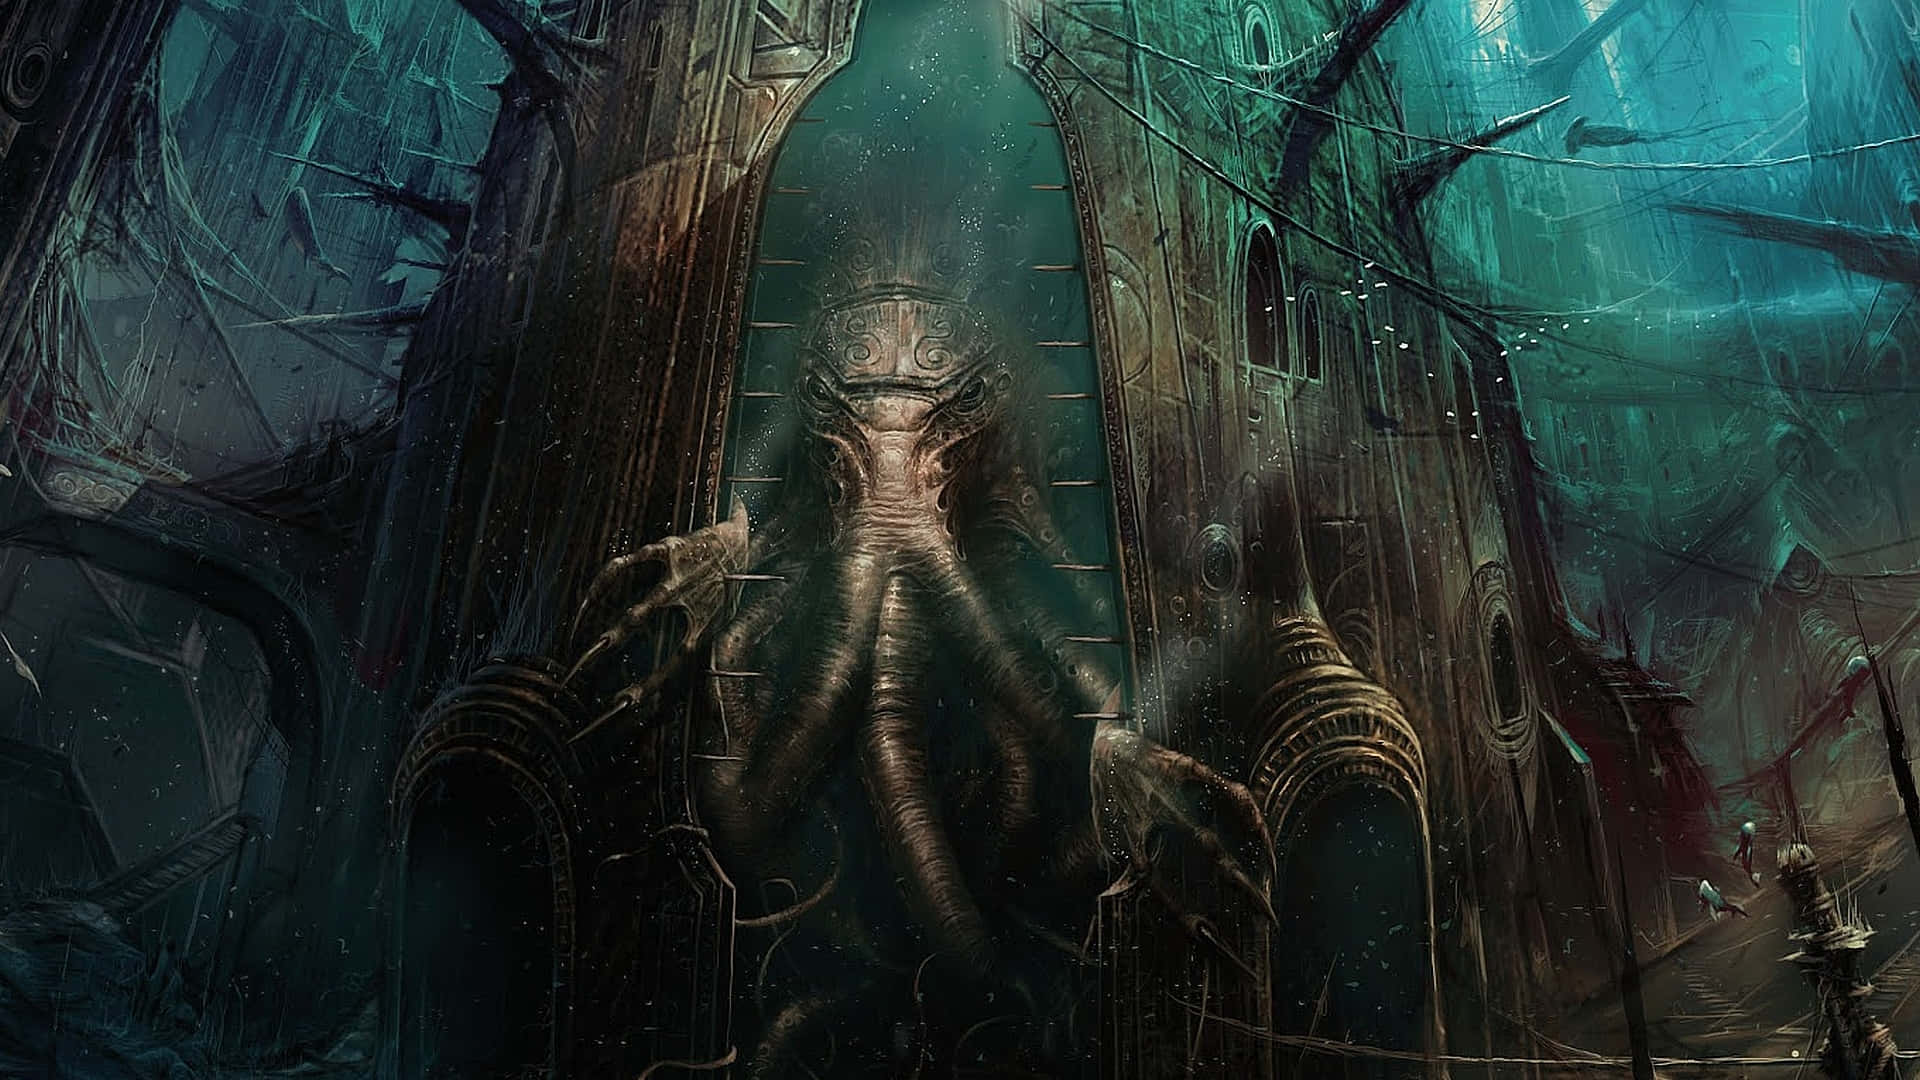 Eindunkles Und Düsteres Bild Einer Der Ikonischsten Kreaturen In H.p. Lovecrafts Geschichten - Dem Mächtigen Cthulhu!